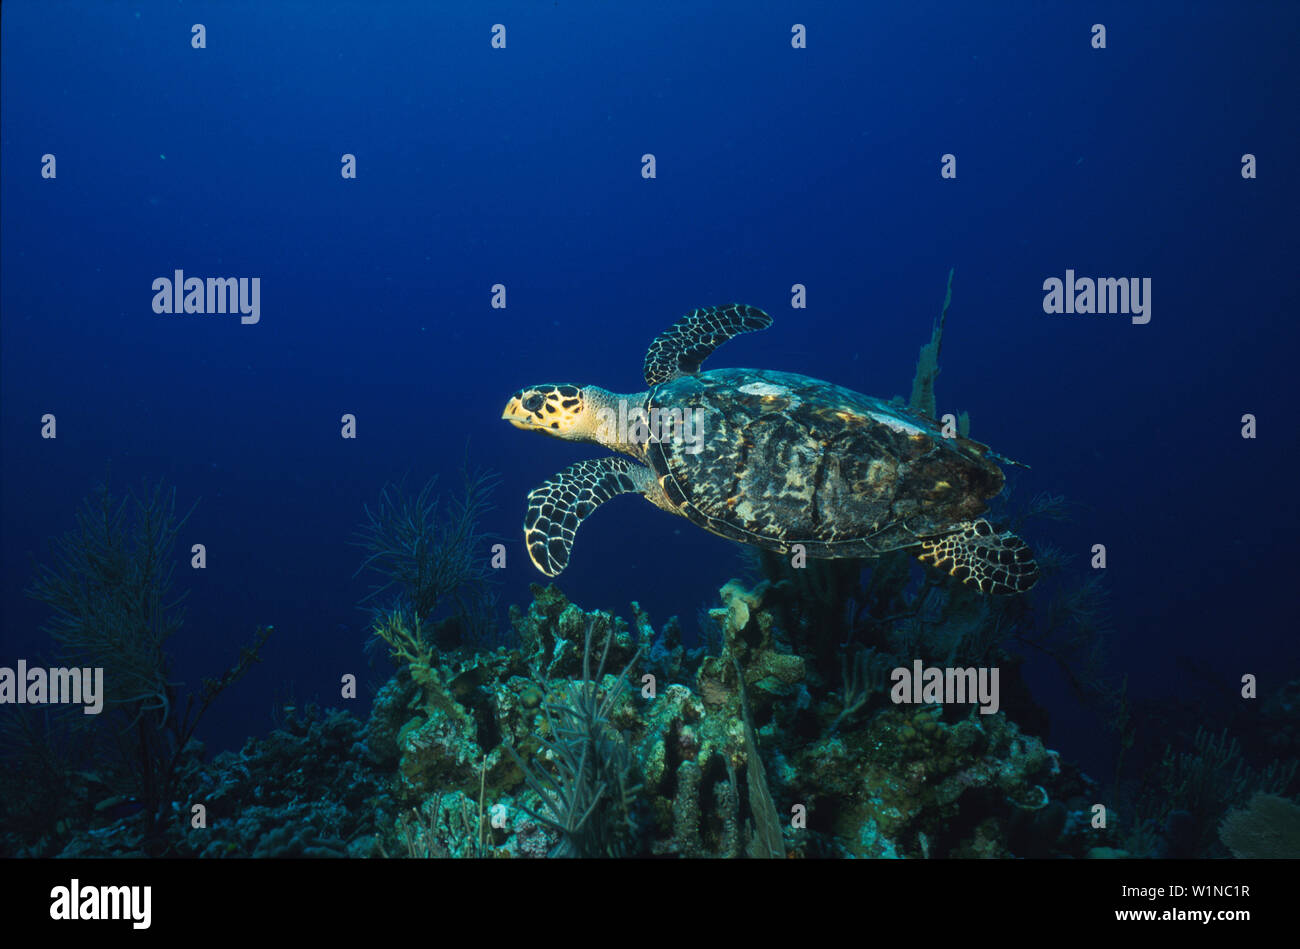 Meeresschildkroete ueber Korallenriff Stock Photo